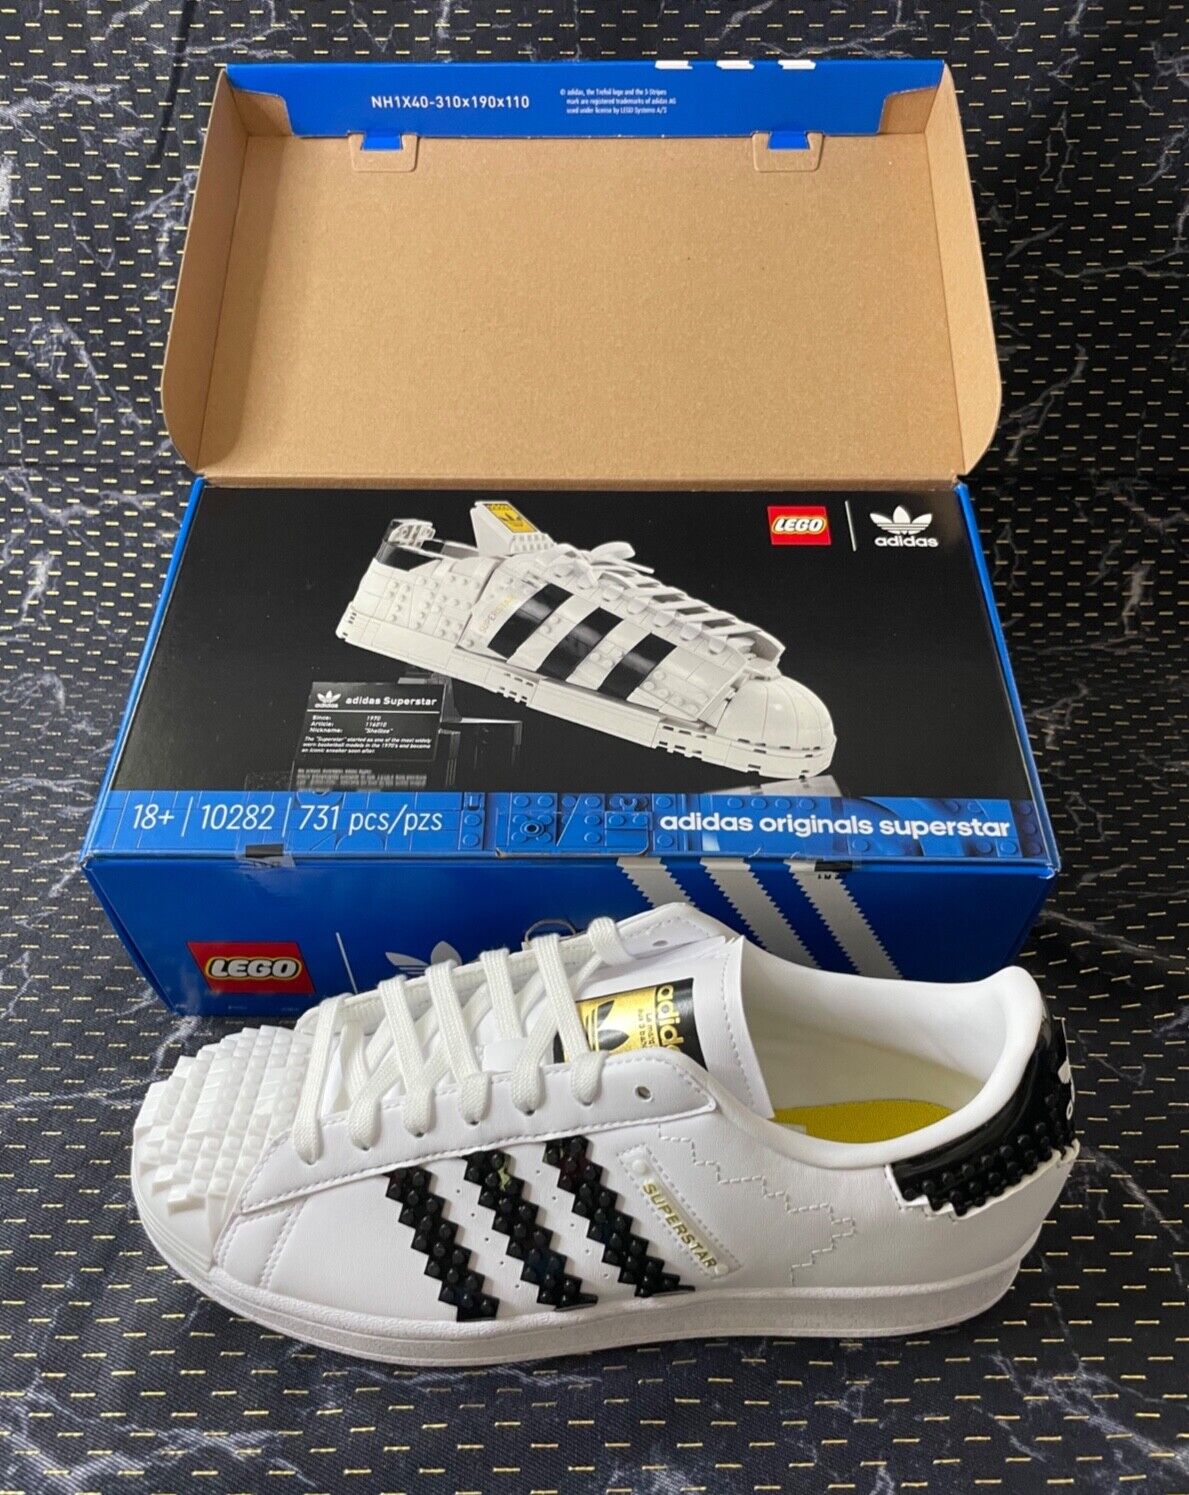 Adidas Originals Superstar Lego shoes and Lego set